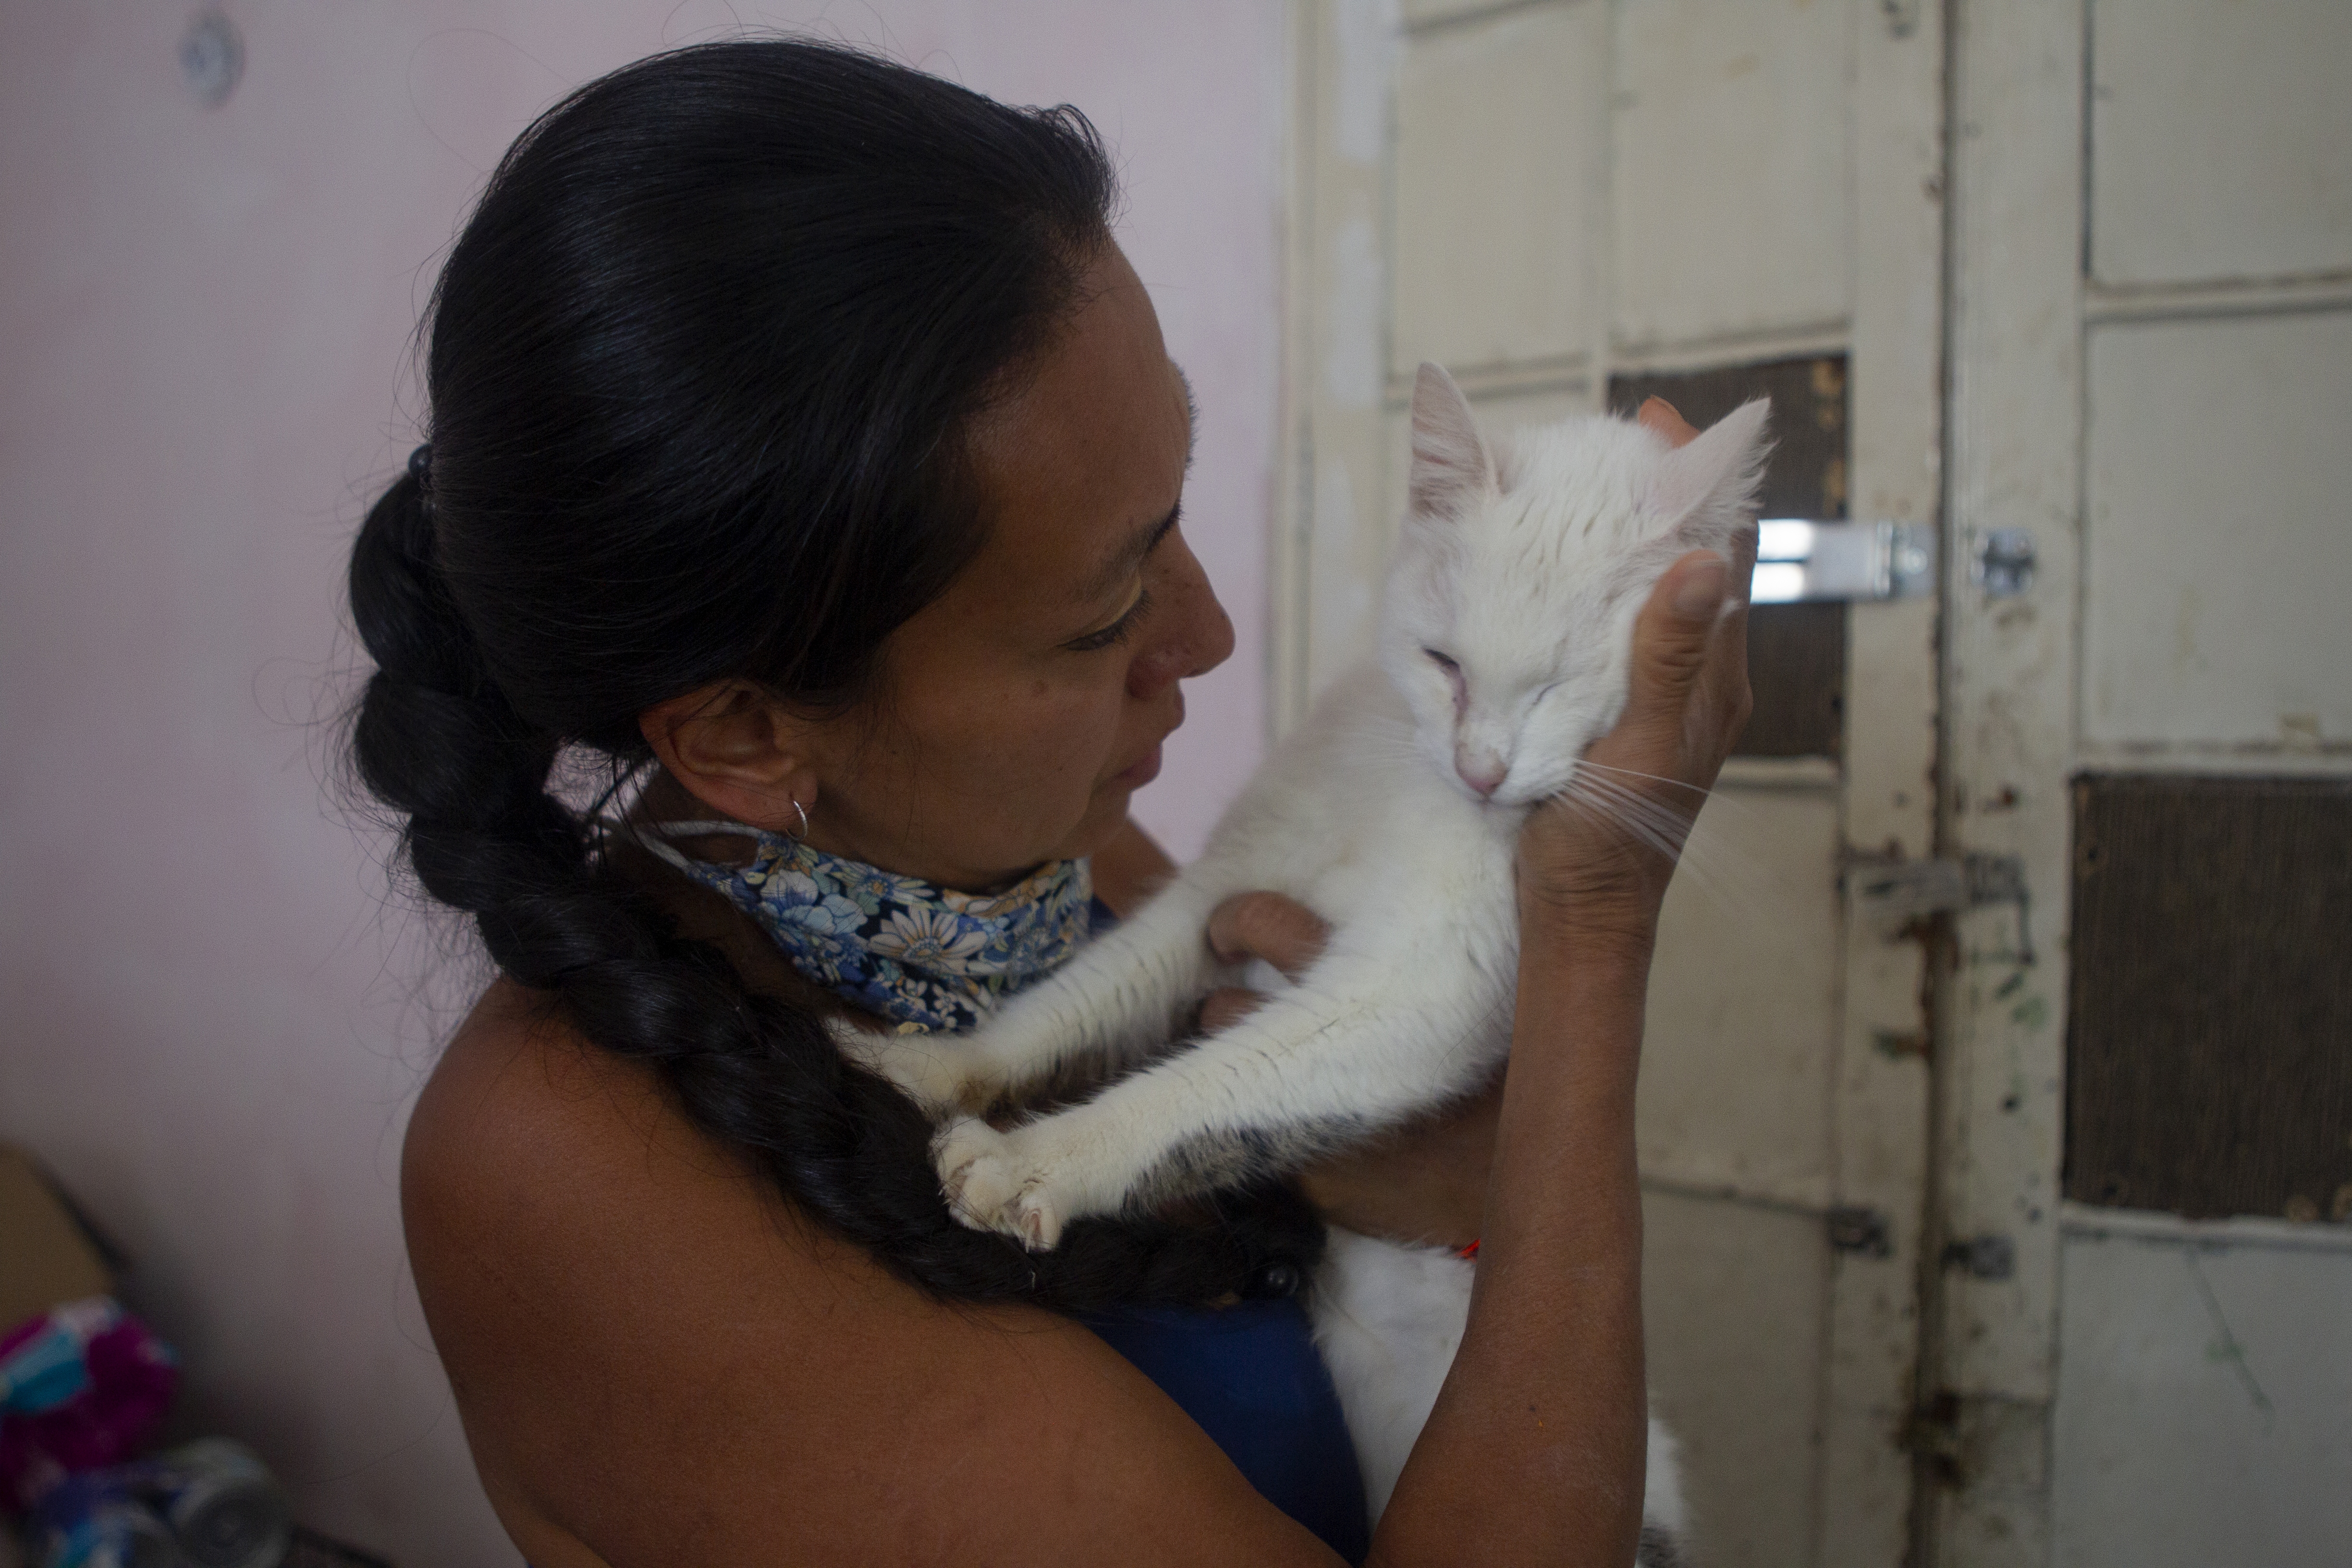 Dinah junto a un gato blanco en Adopta Amor, albergue dedicado al rescate de perros y gatos. Ciudad de México, mayo 28, 2021.Foto: Karina Hernández / Infobae